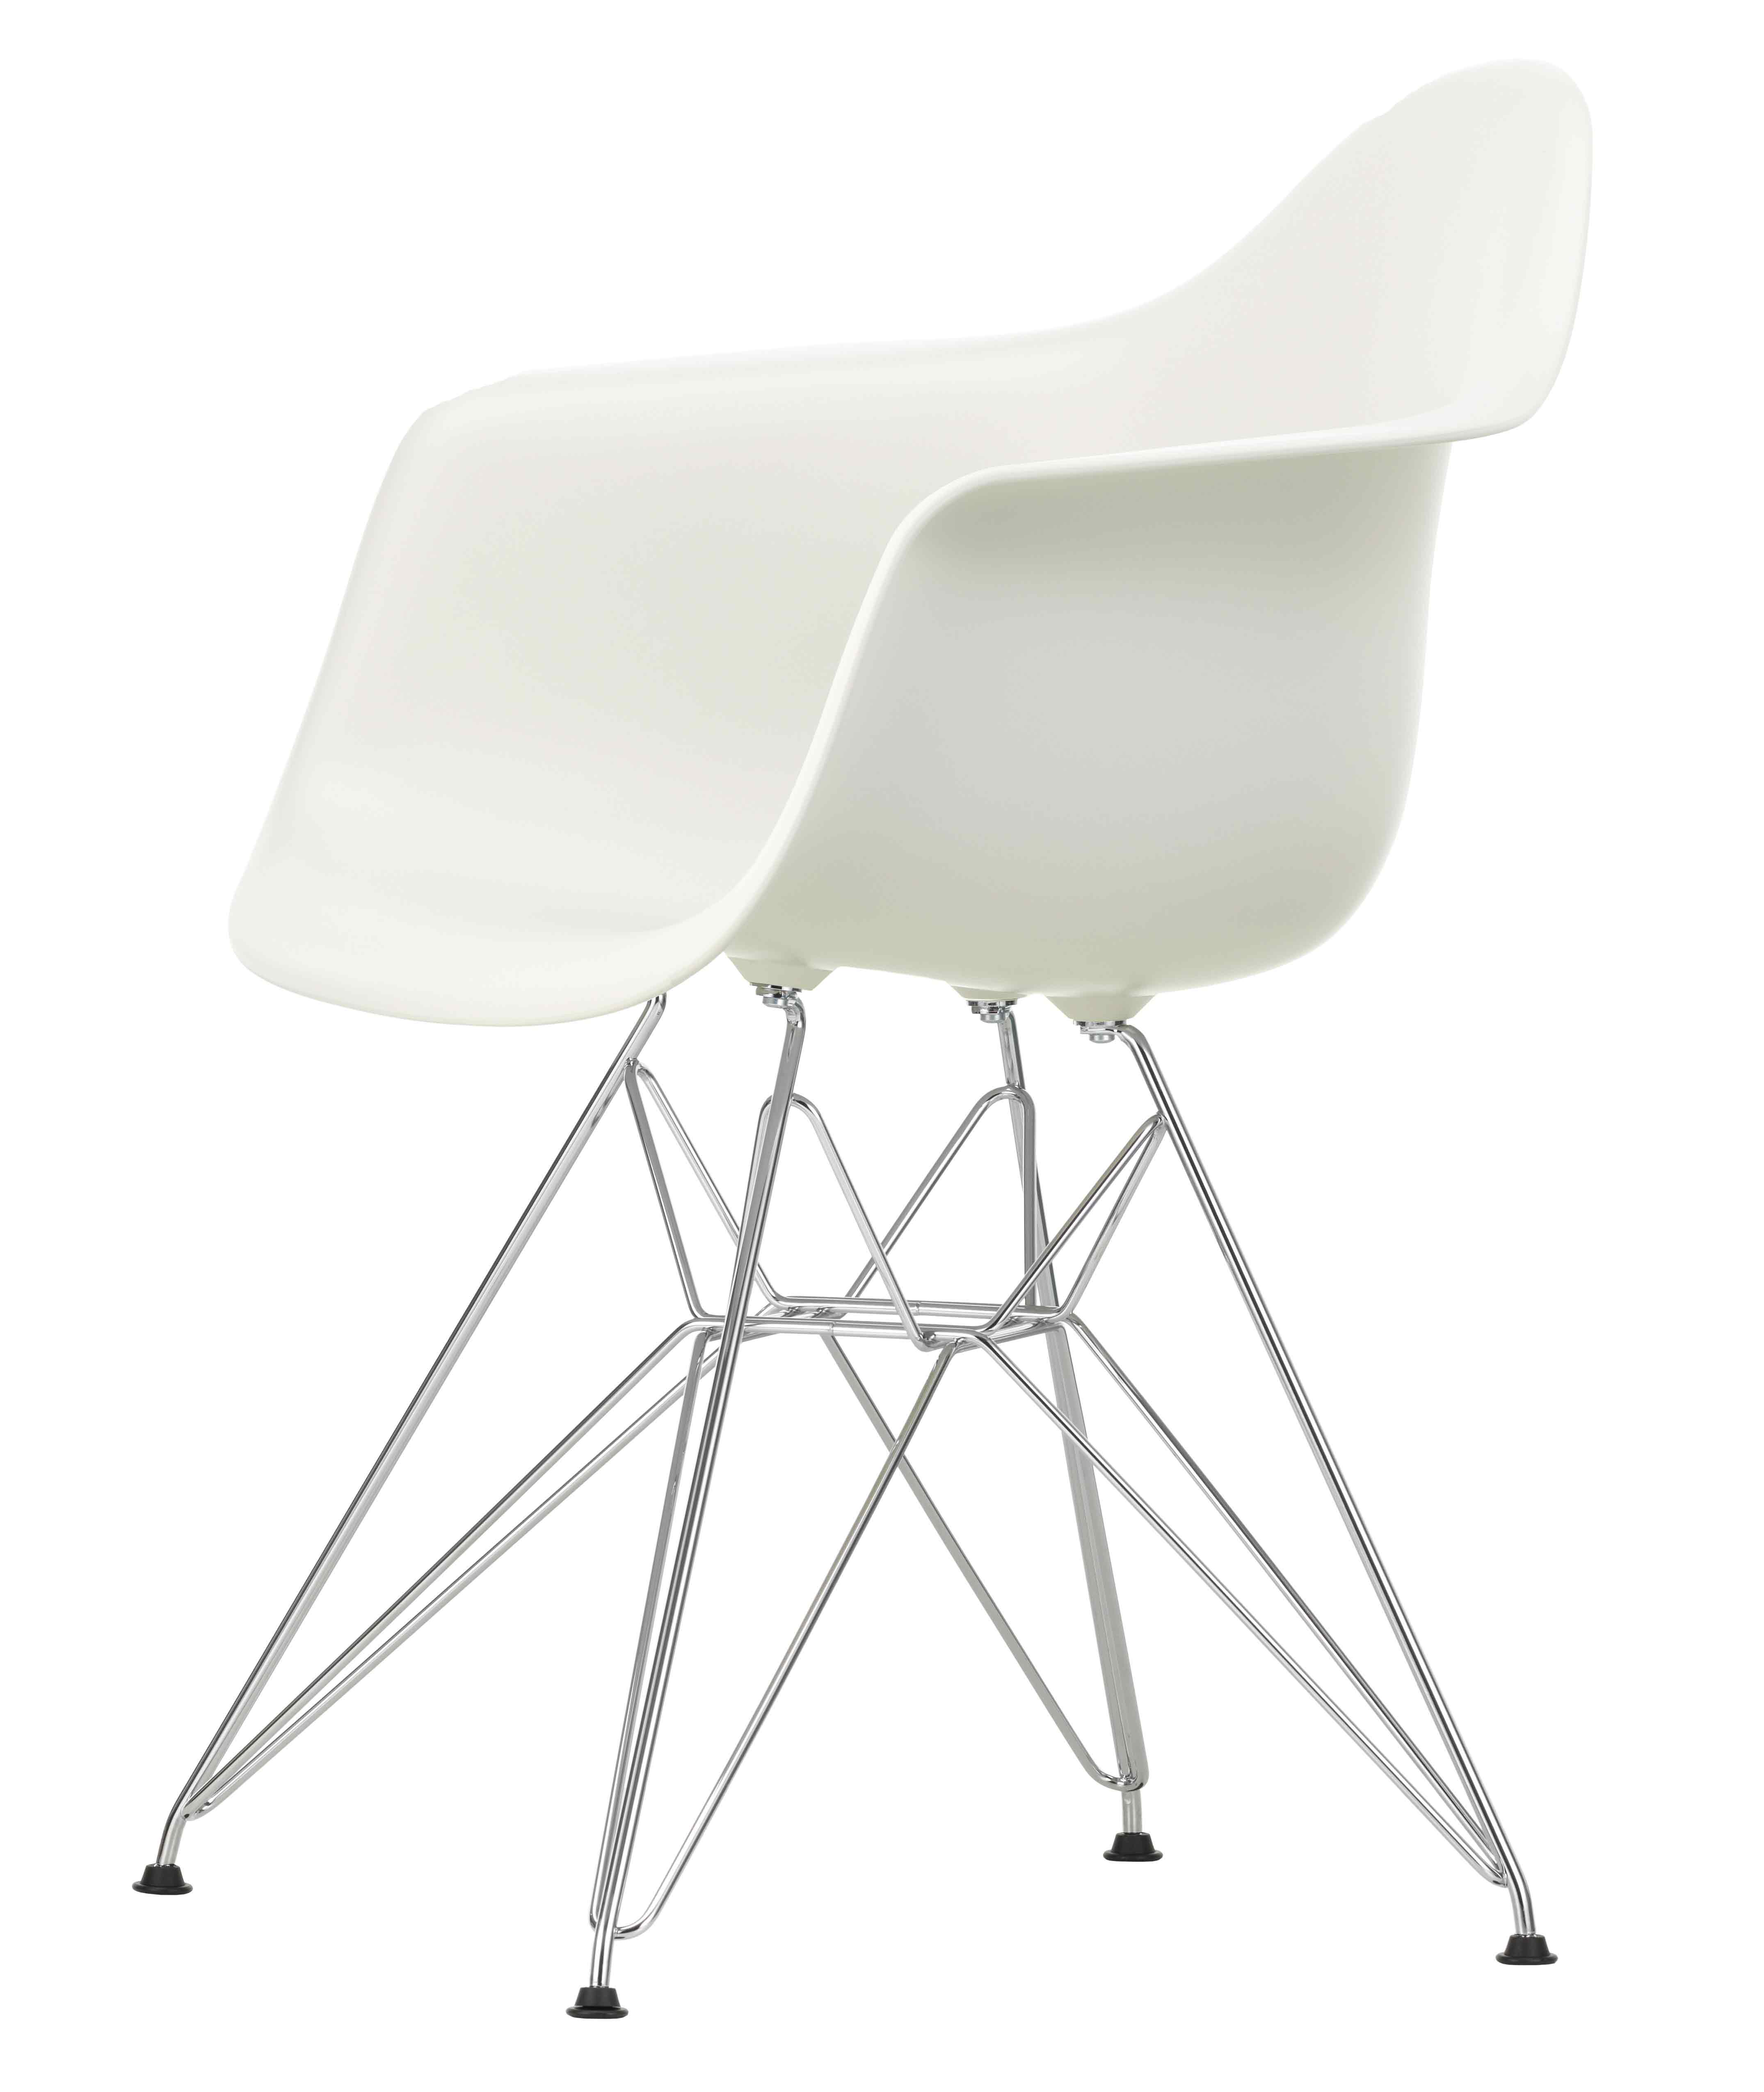 Designerstuhl Side chair DAR in weiss mit Metalluntergestell von Vitra jetzt im LHL Onlineshop kaufen – Schraegansicht